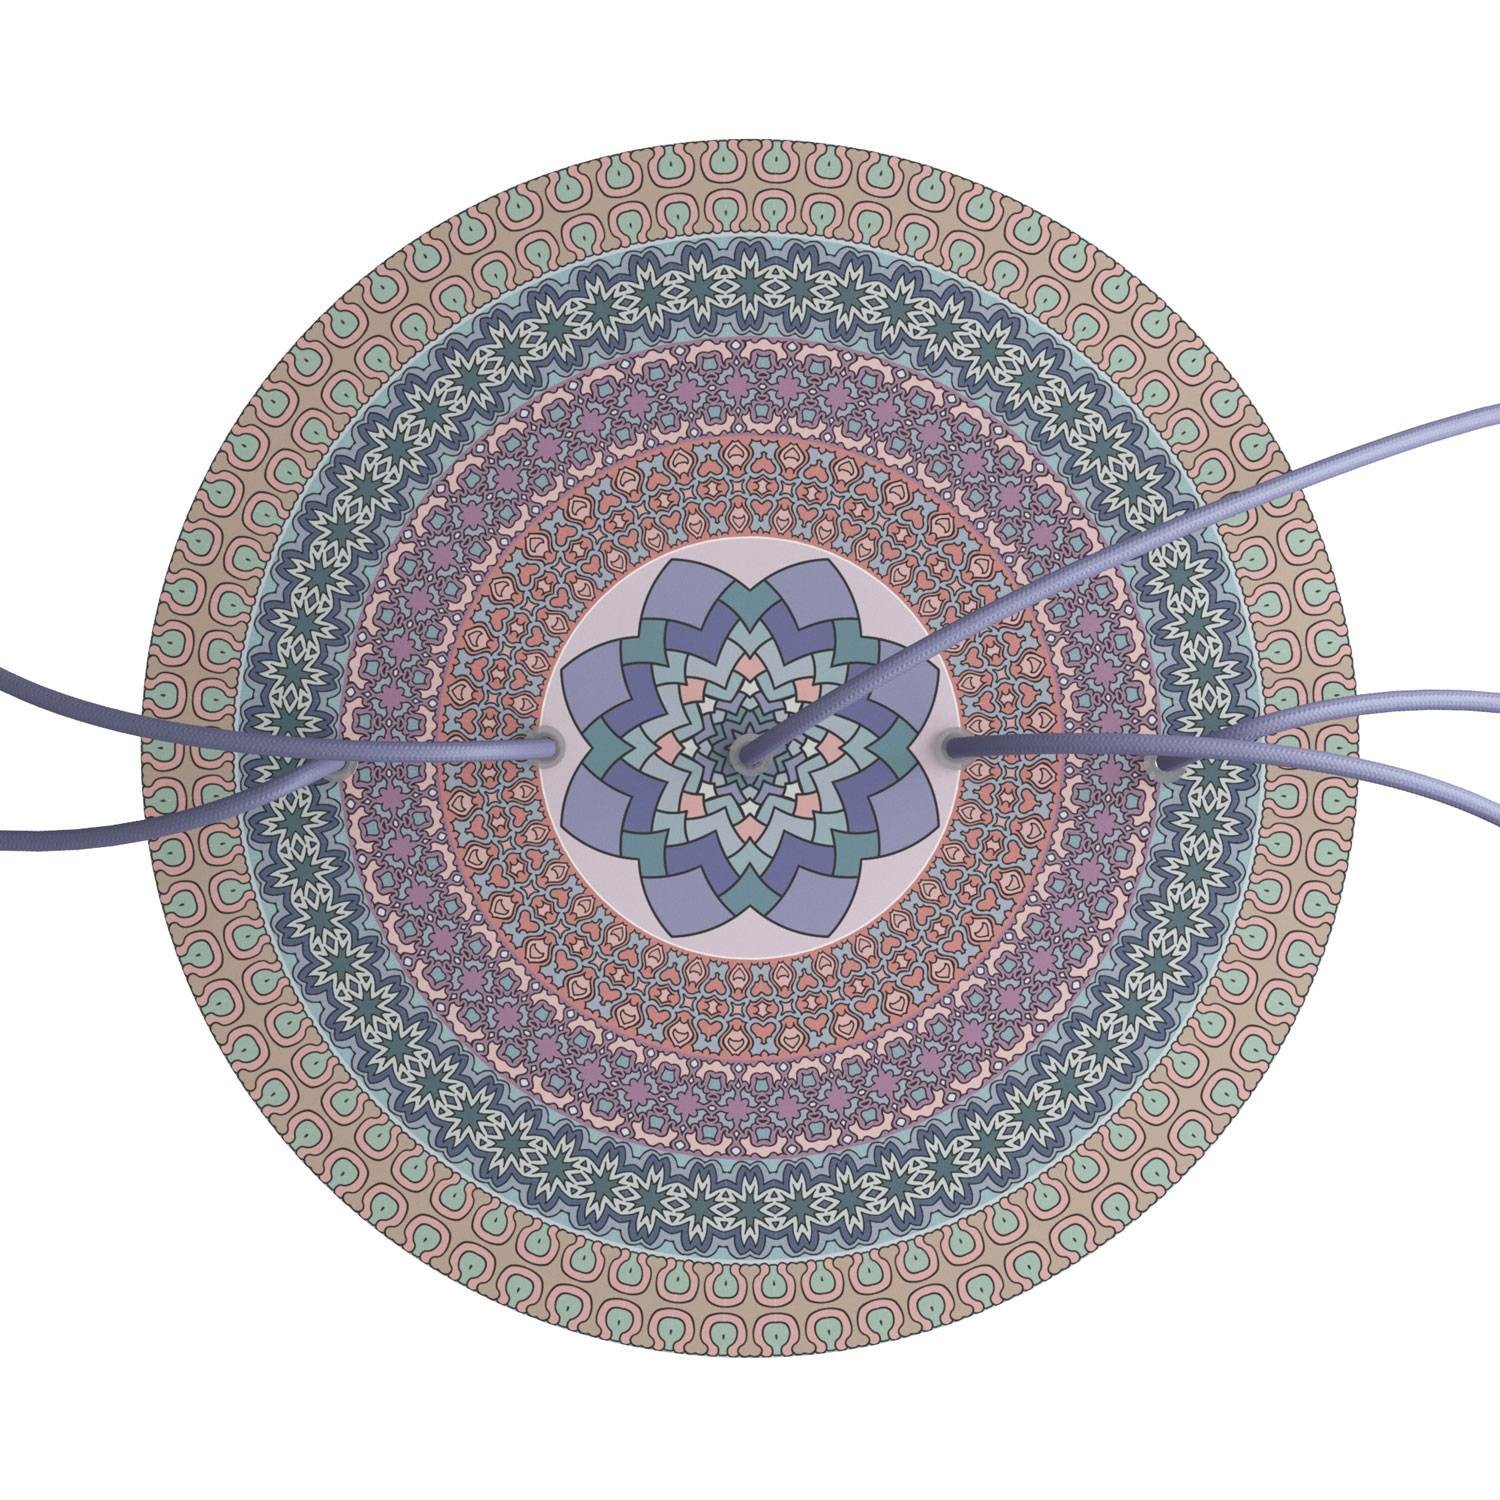 Velika okrugla dekoracija za stropnu rozetu 400 mm - Rose-One sistem s 5 rupa u liniji i 4 bočne rupe - PROMO